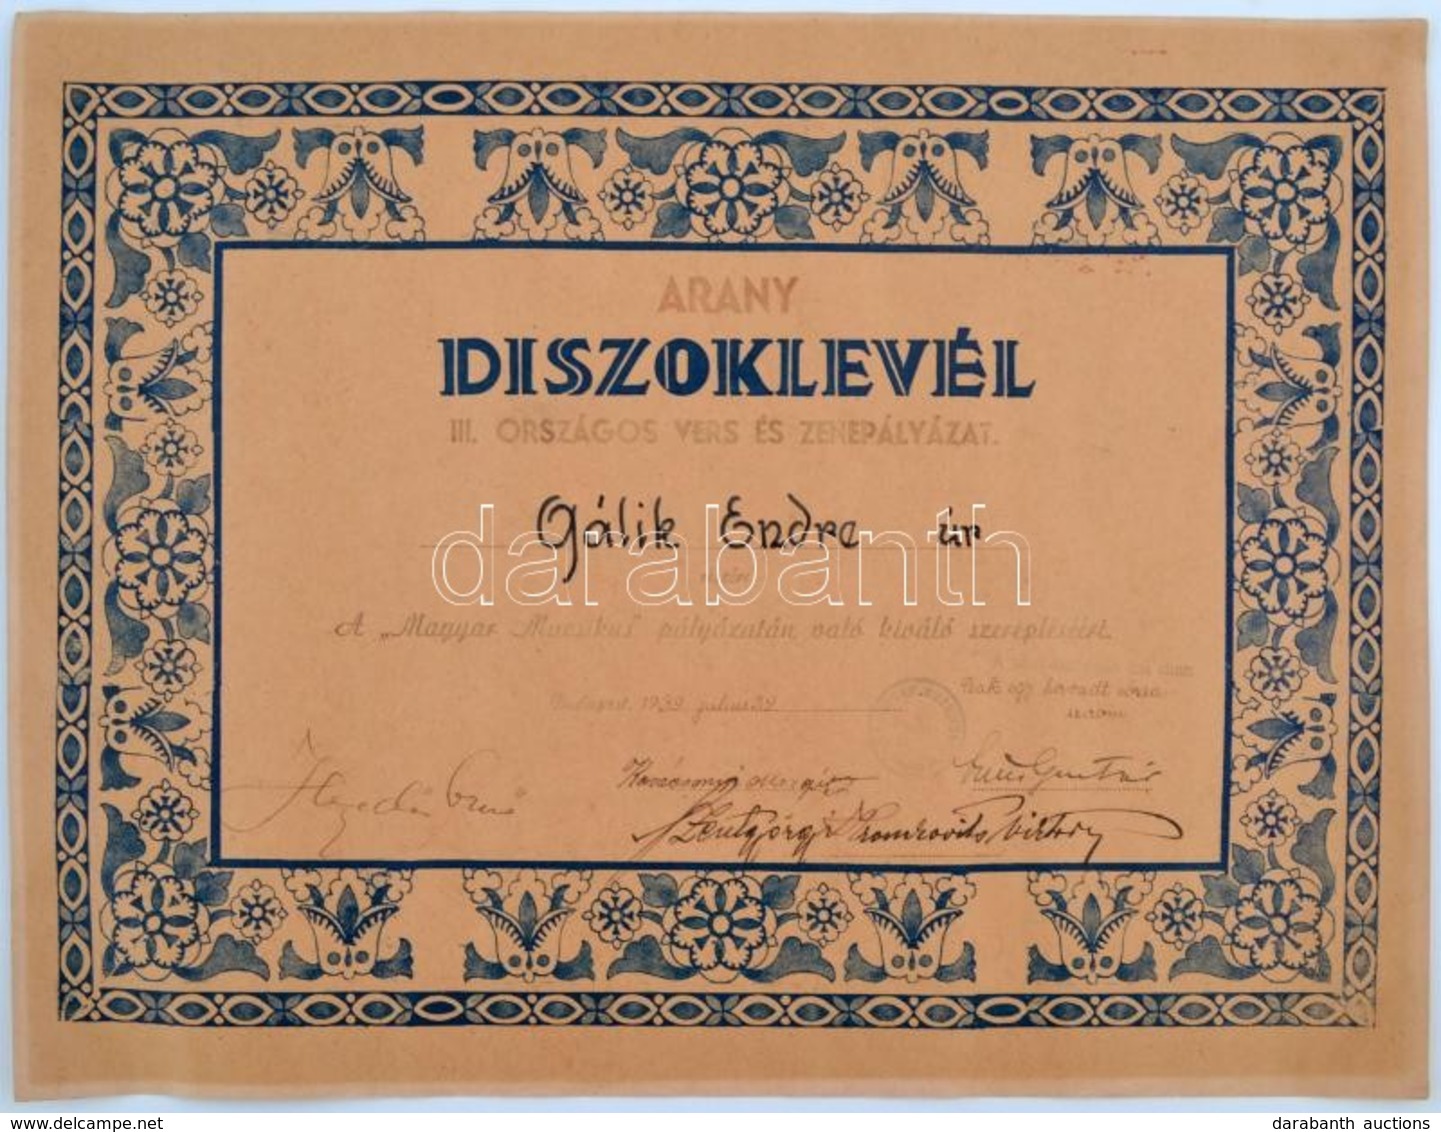 1939 A Magyar Muzsikus Arany Díszoklevele Gálik Endre (1907-?) Zeneszerz?nek A III. Országos Vers- és Zenepályázaton Nyú - Non Classificati